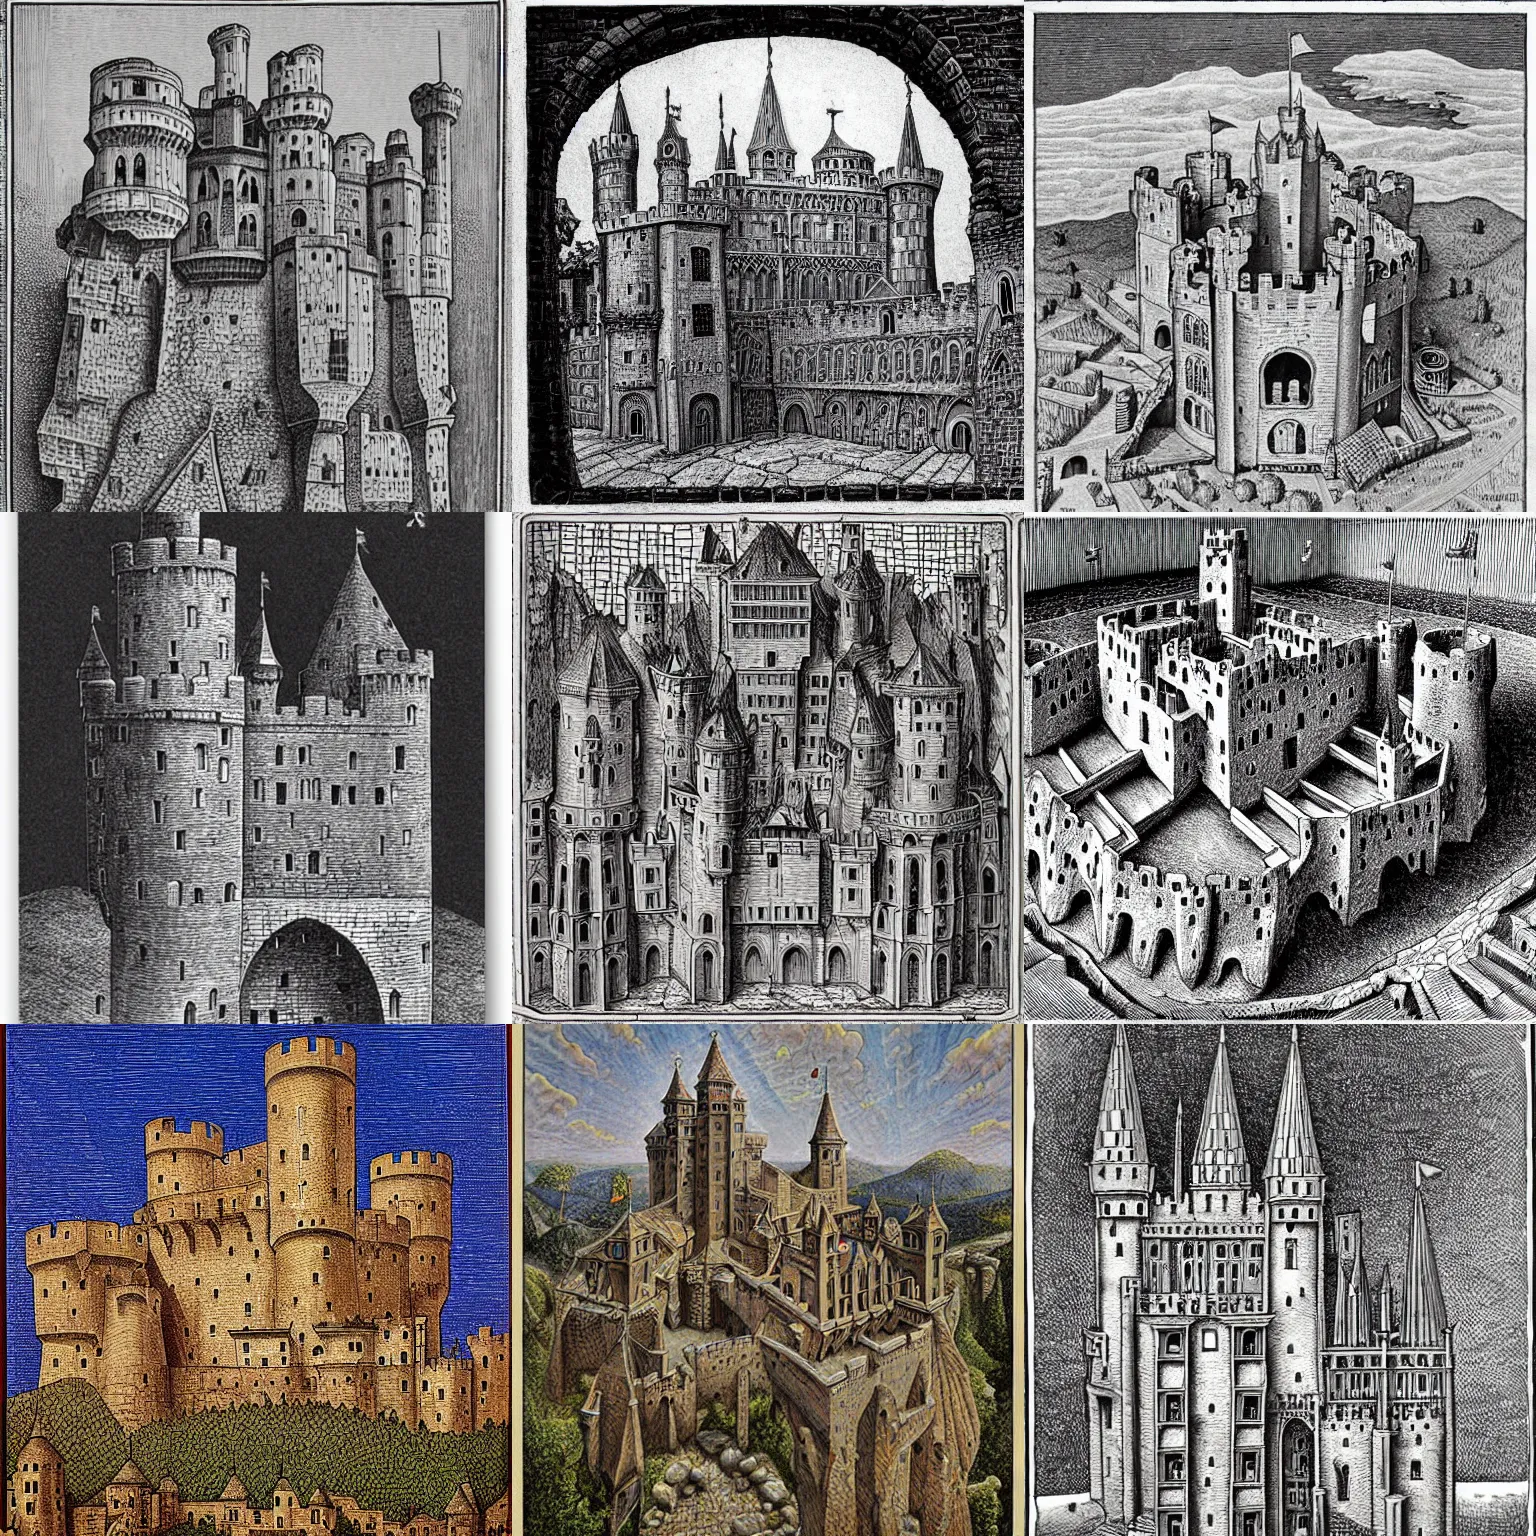 Prompt: medieval castle, by boris diodorov